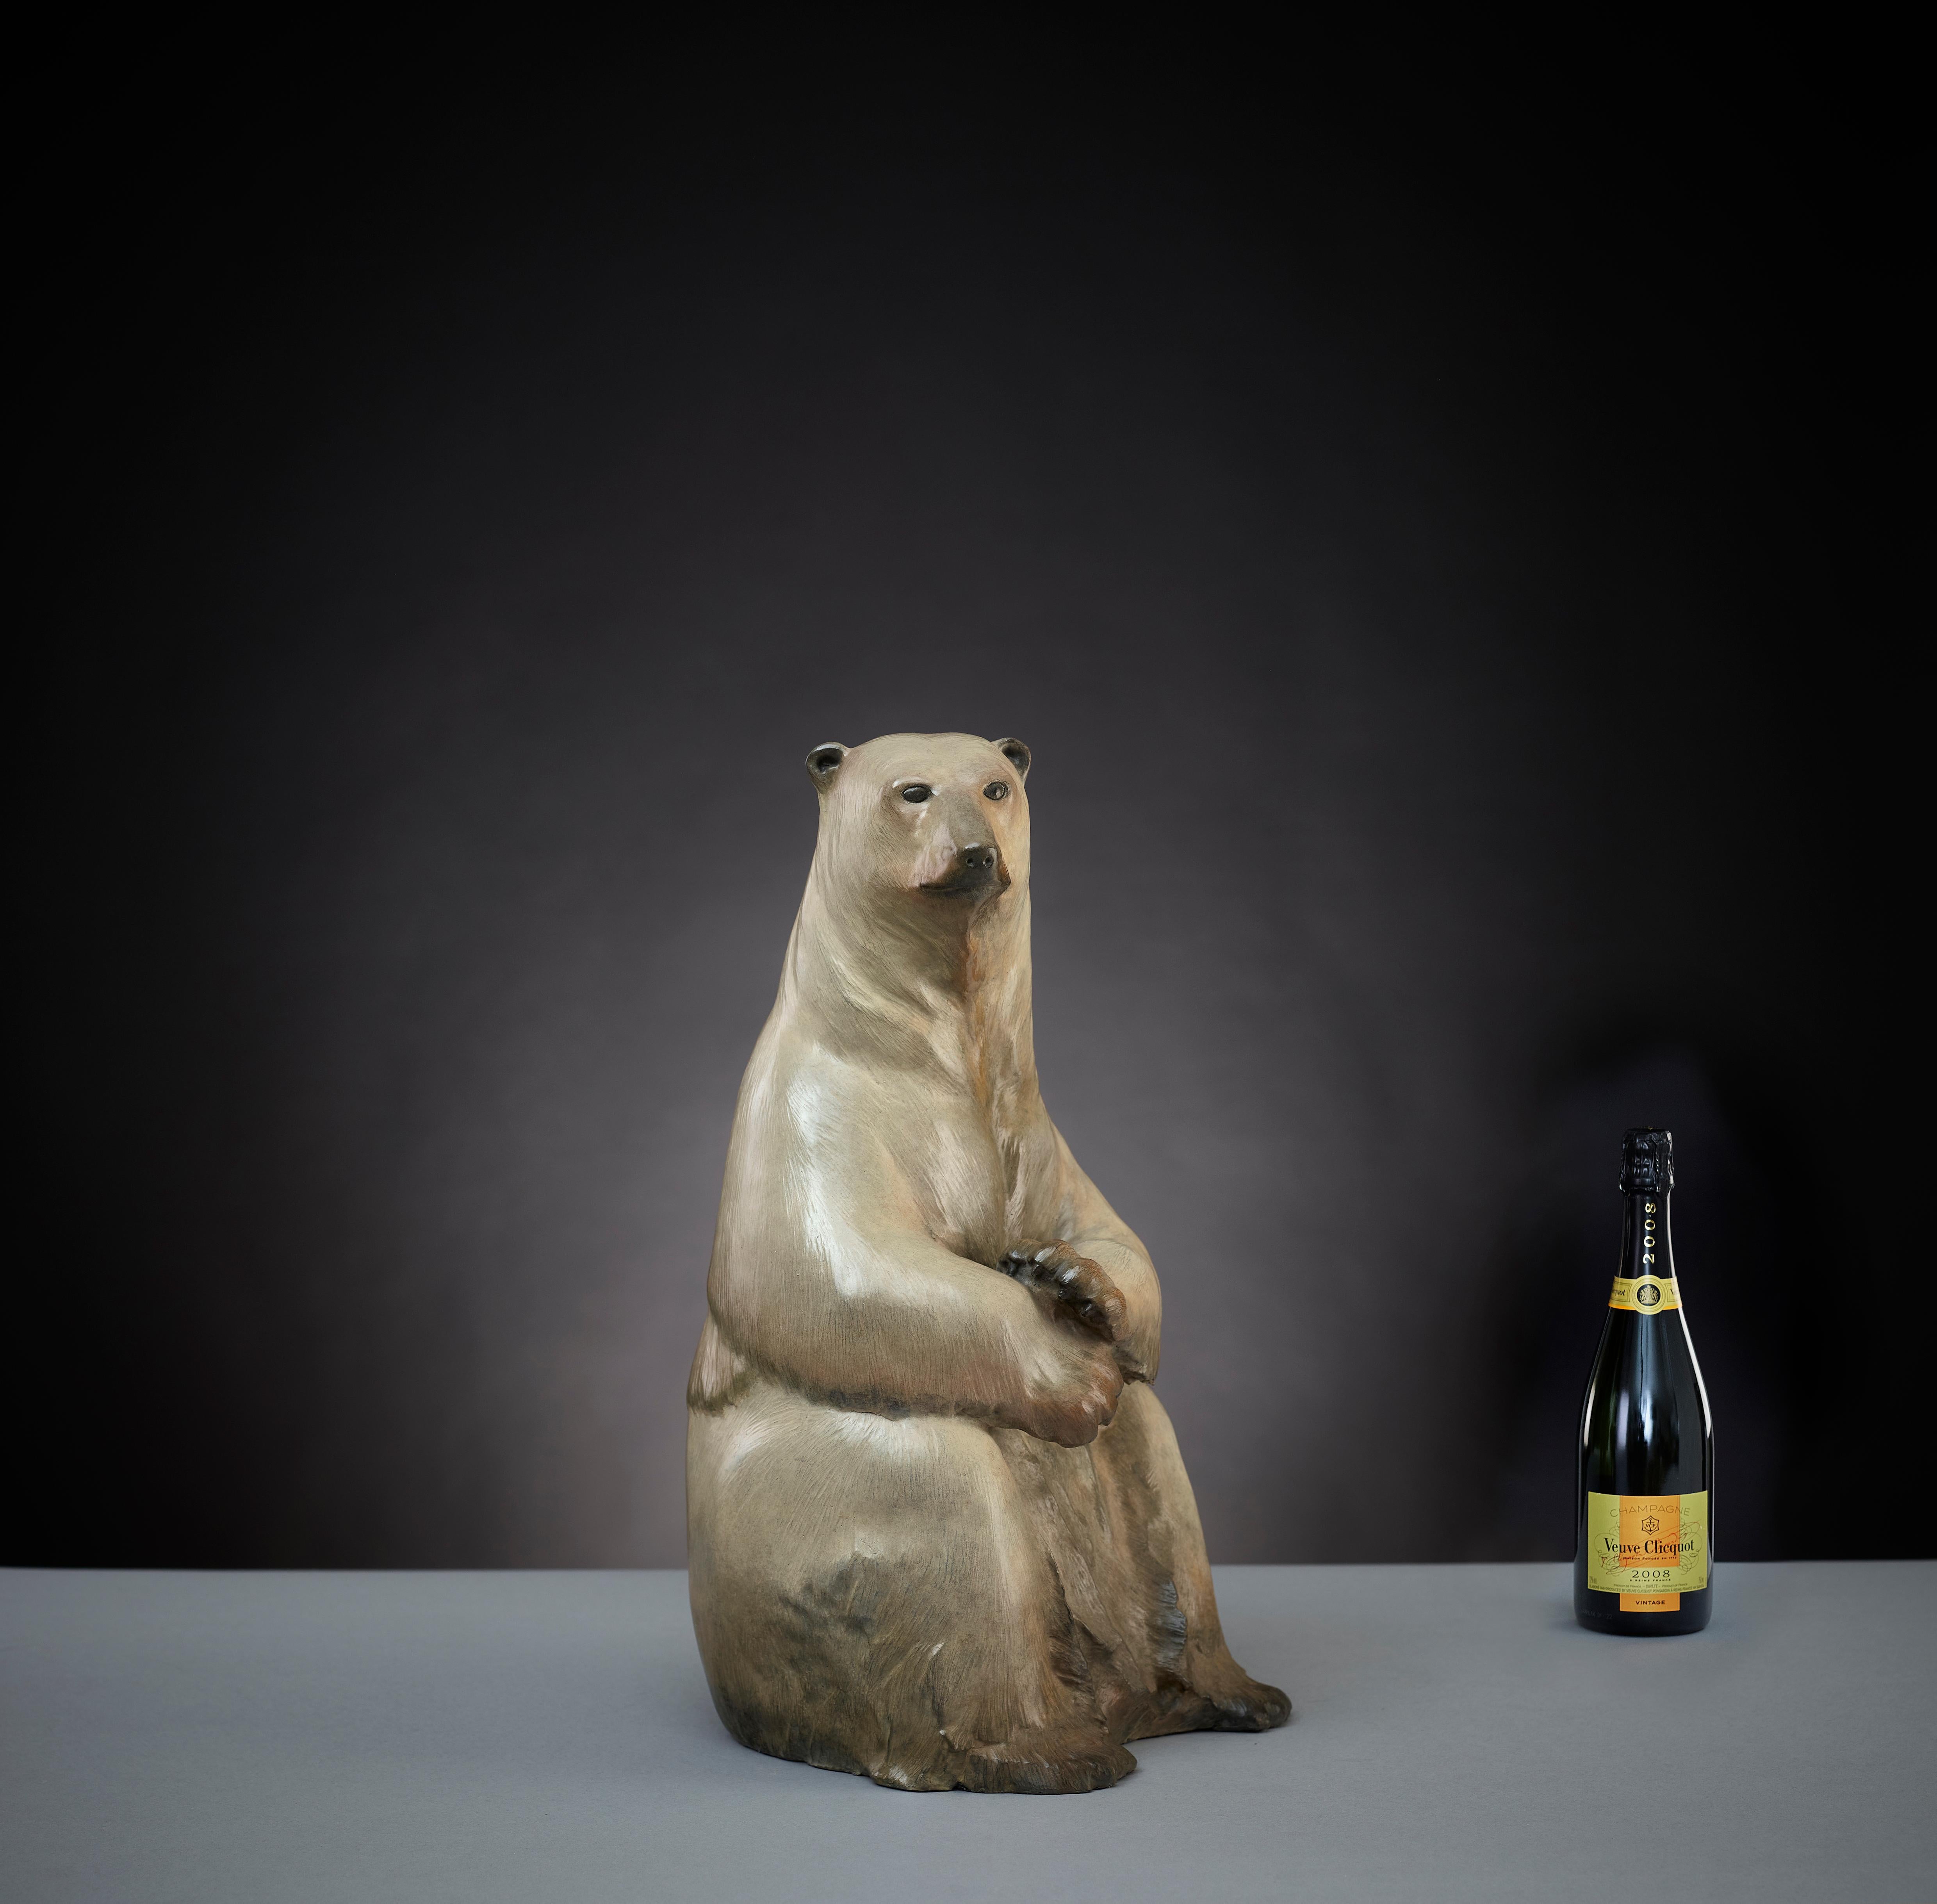 Zeitgenössische Polarbär-Skulptur "Benji" von Tobias Martin, Tierwelt